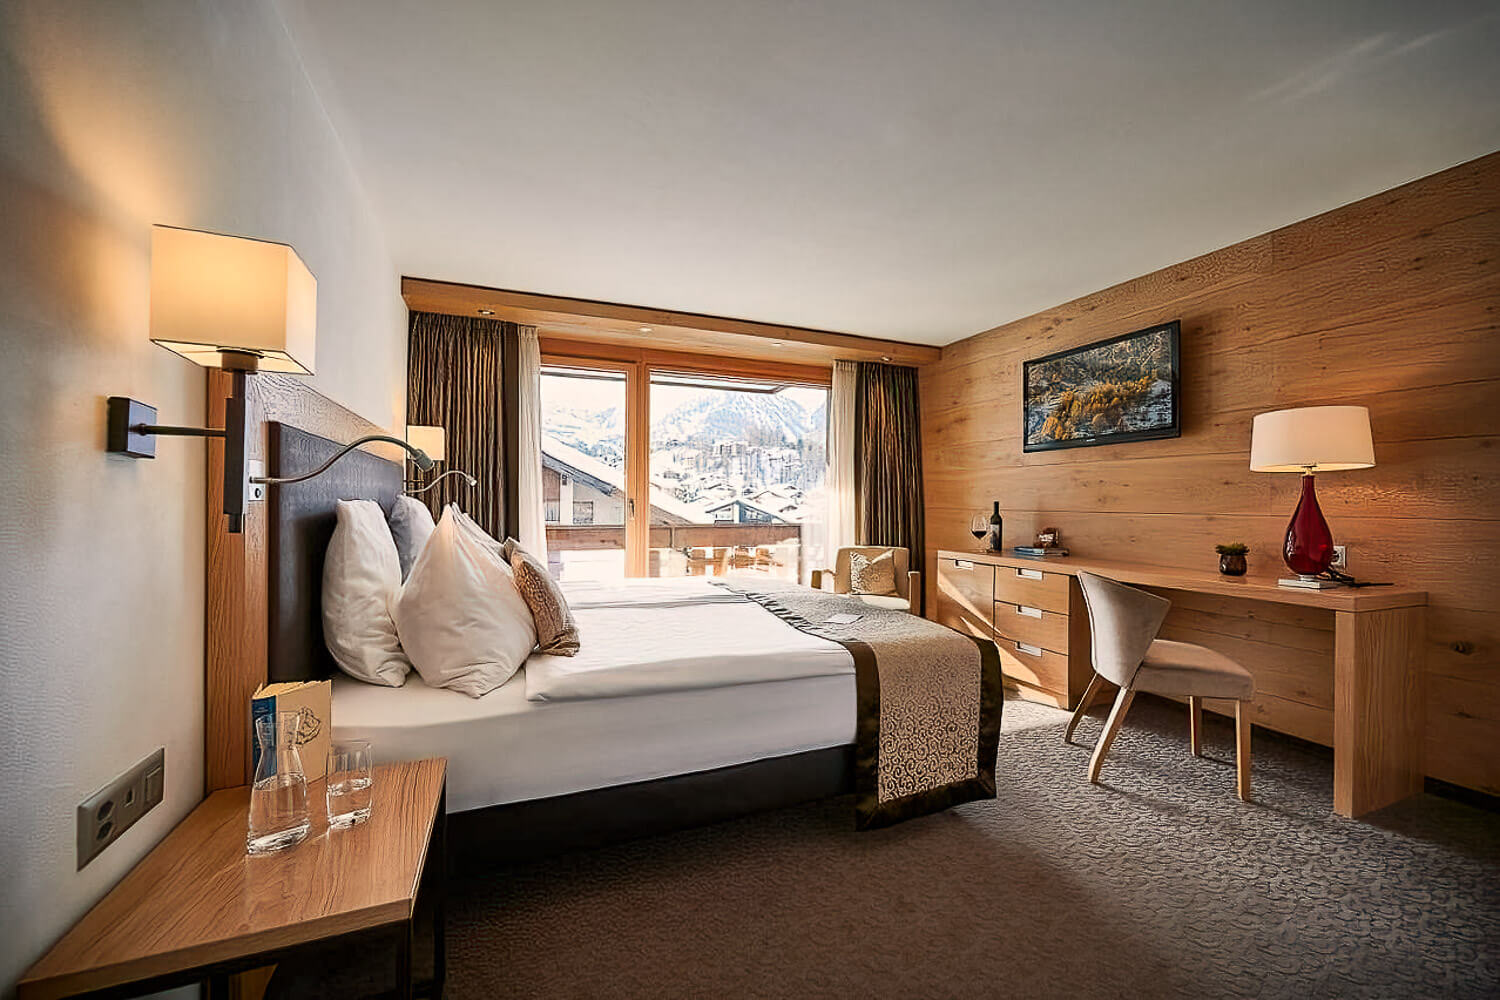 Hotel Ambiance Superior in Zermatt